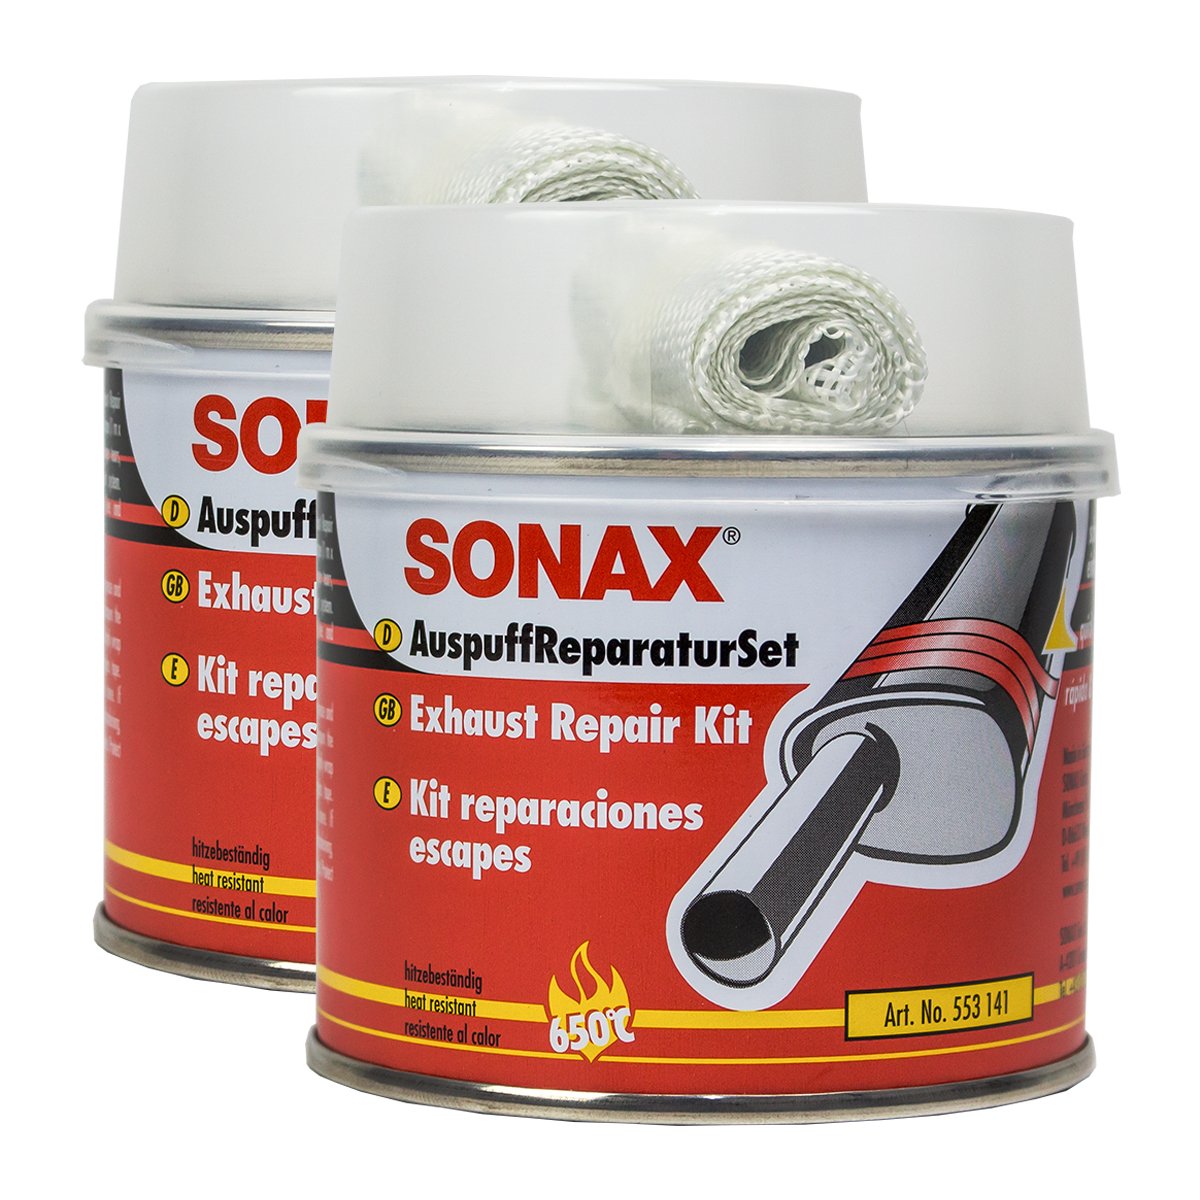 SONAX 2X 05531410 AuspuffReparaturSet Auspuffpaste Dichtmasse Asbestfrei 200ml von SONAX